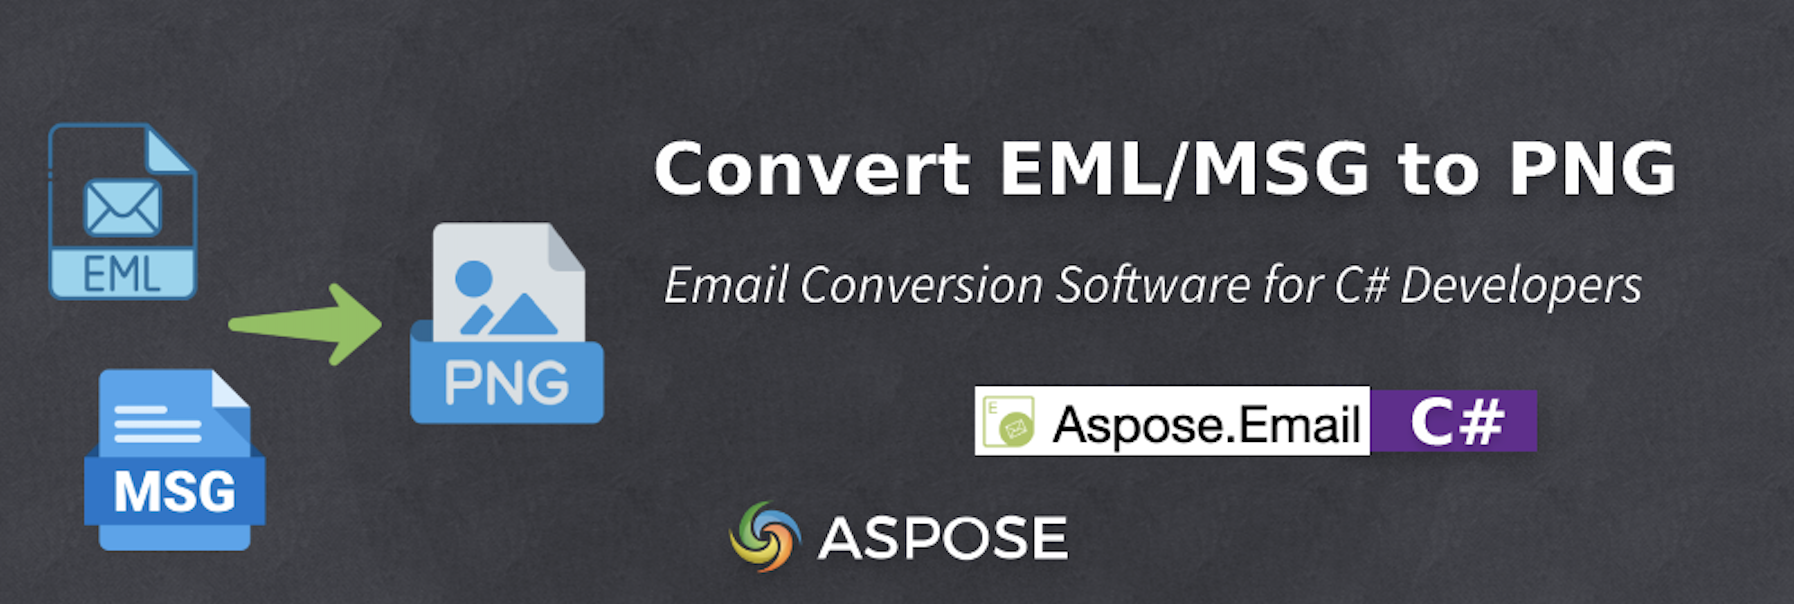 Software di conversione e-mail per sviluppatori C#: da EML a PNG